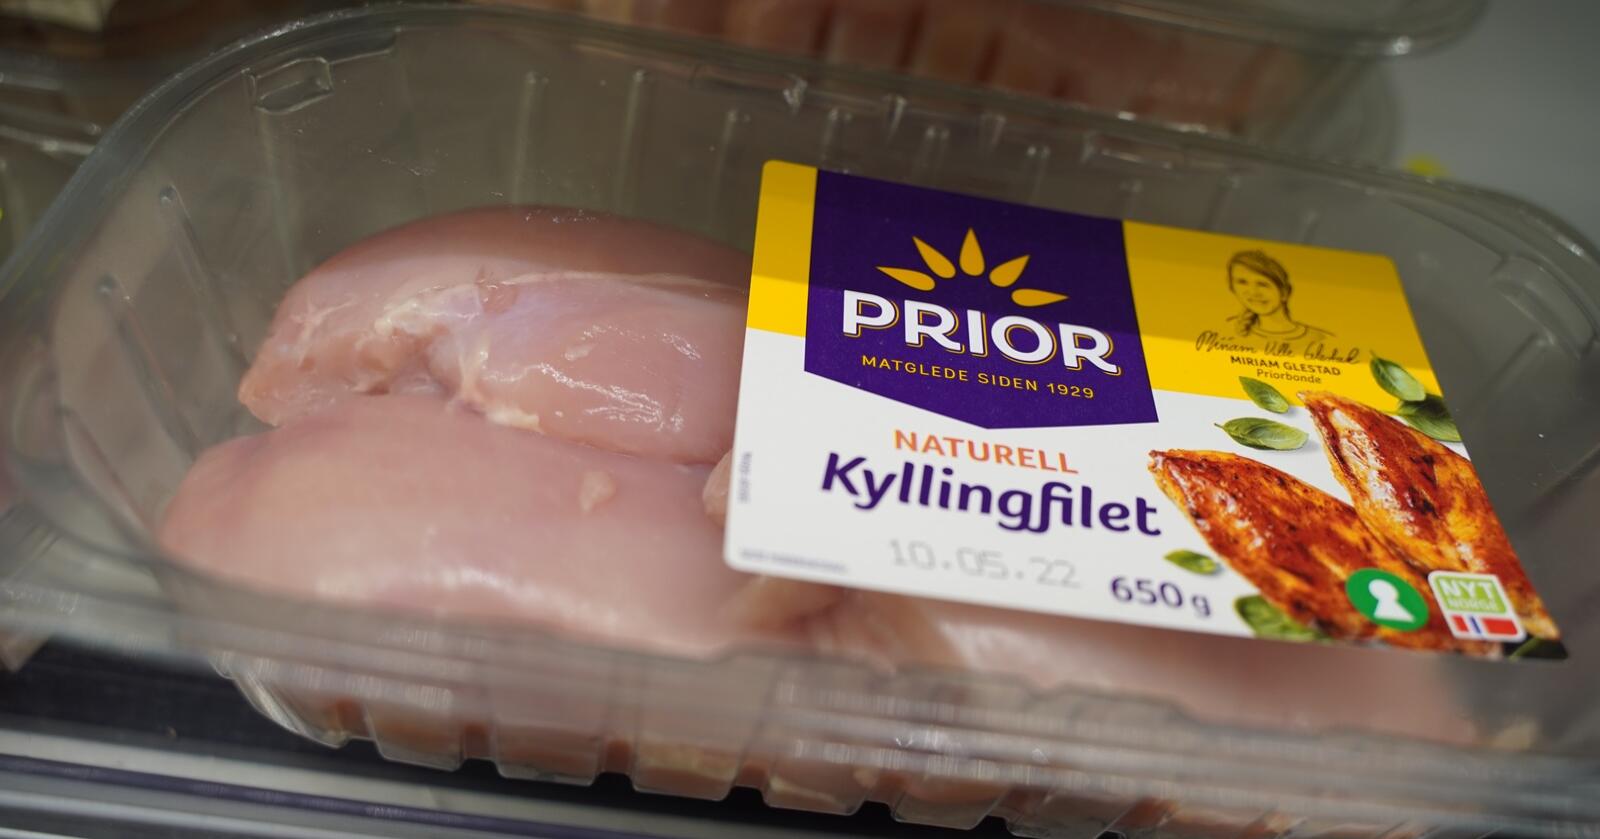 Norturas merkevare for fjørfekjøtt Prior kan bli utkonkurrert, frykter kyllingbonde. Foto: Lars Bilit Hagen